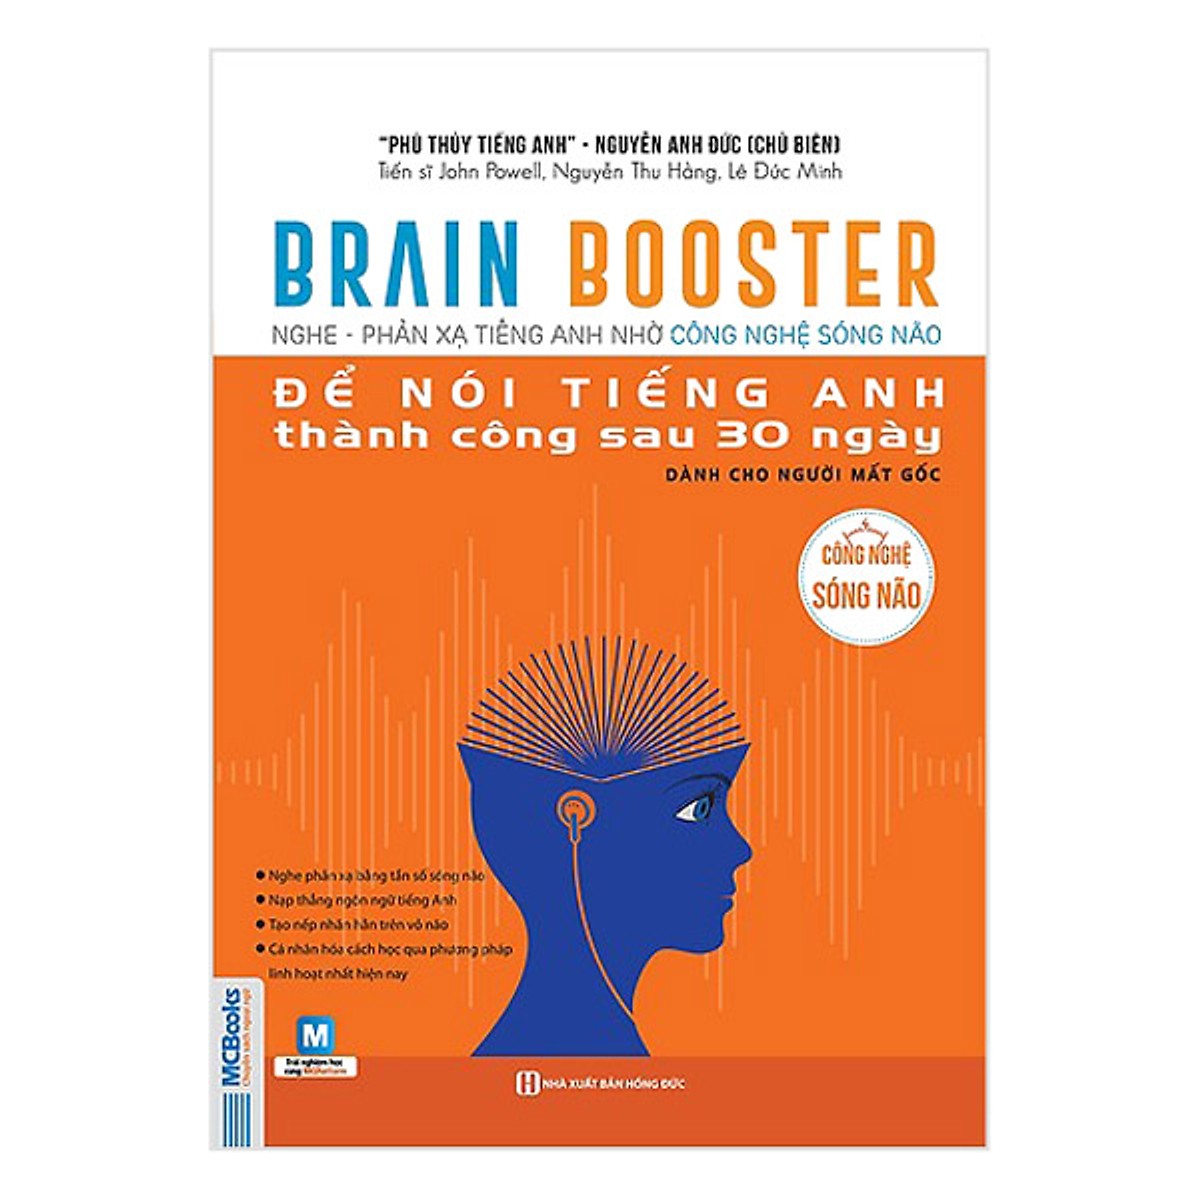 Combo Brain Booster - Nghe Phản Xạ Tiếng Anh Nhờ Công Nghệ Sóng Não Để Nói Tiếng Anh Thành Công Sau 30 Ngày (Tặng kèm kho Audio Books)